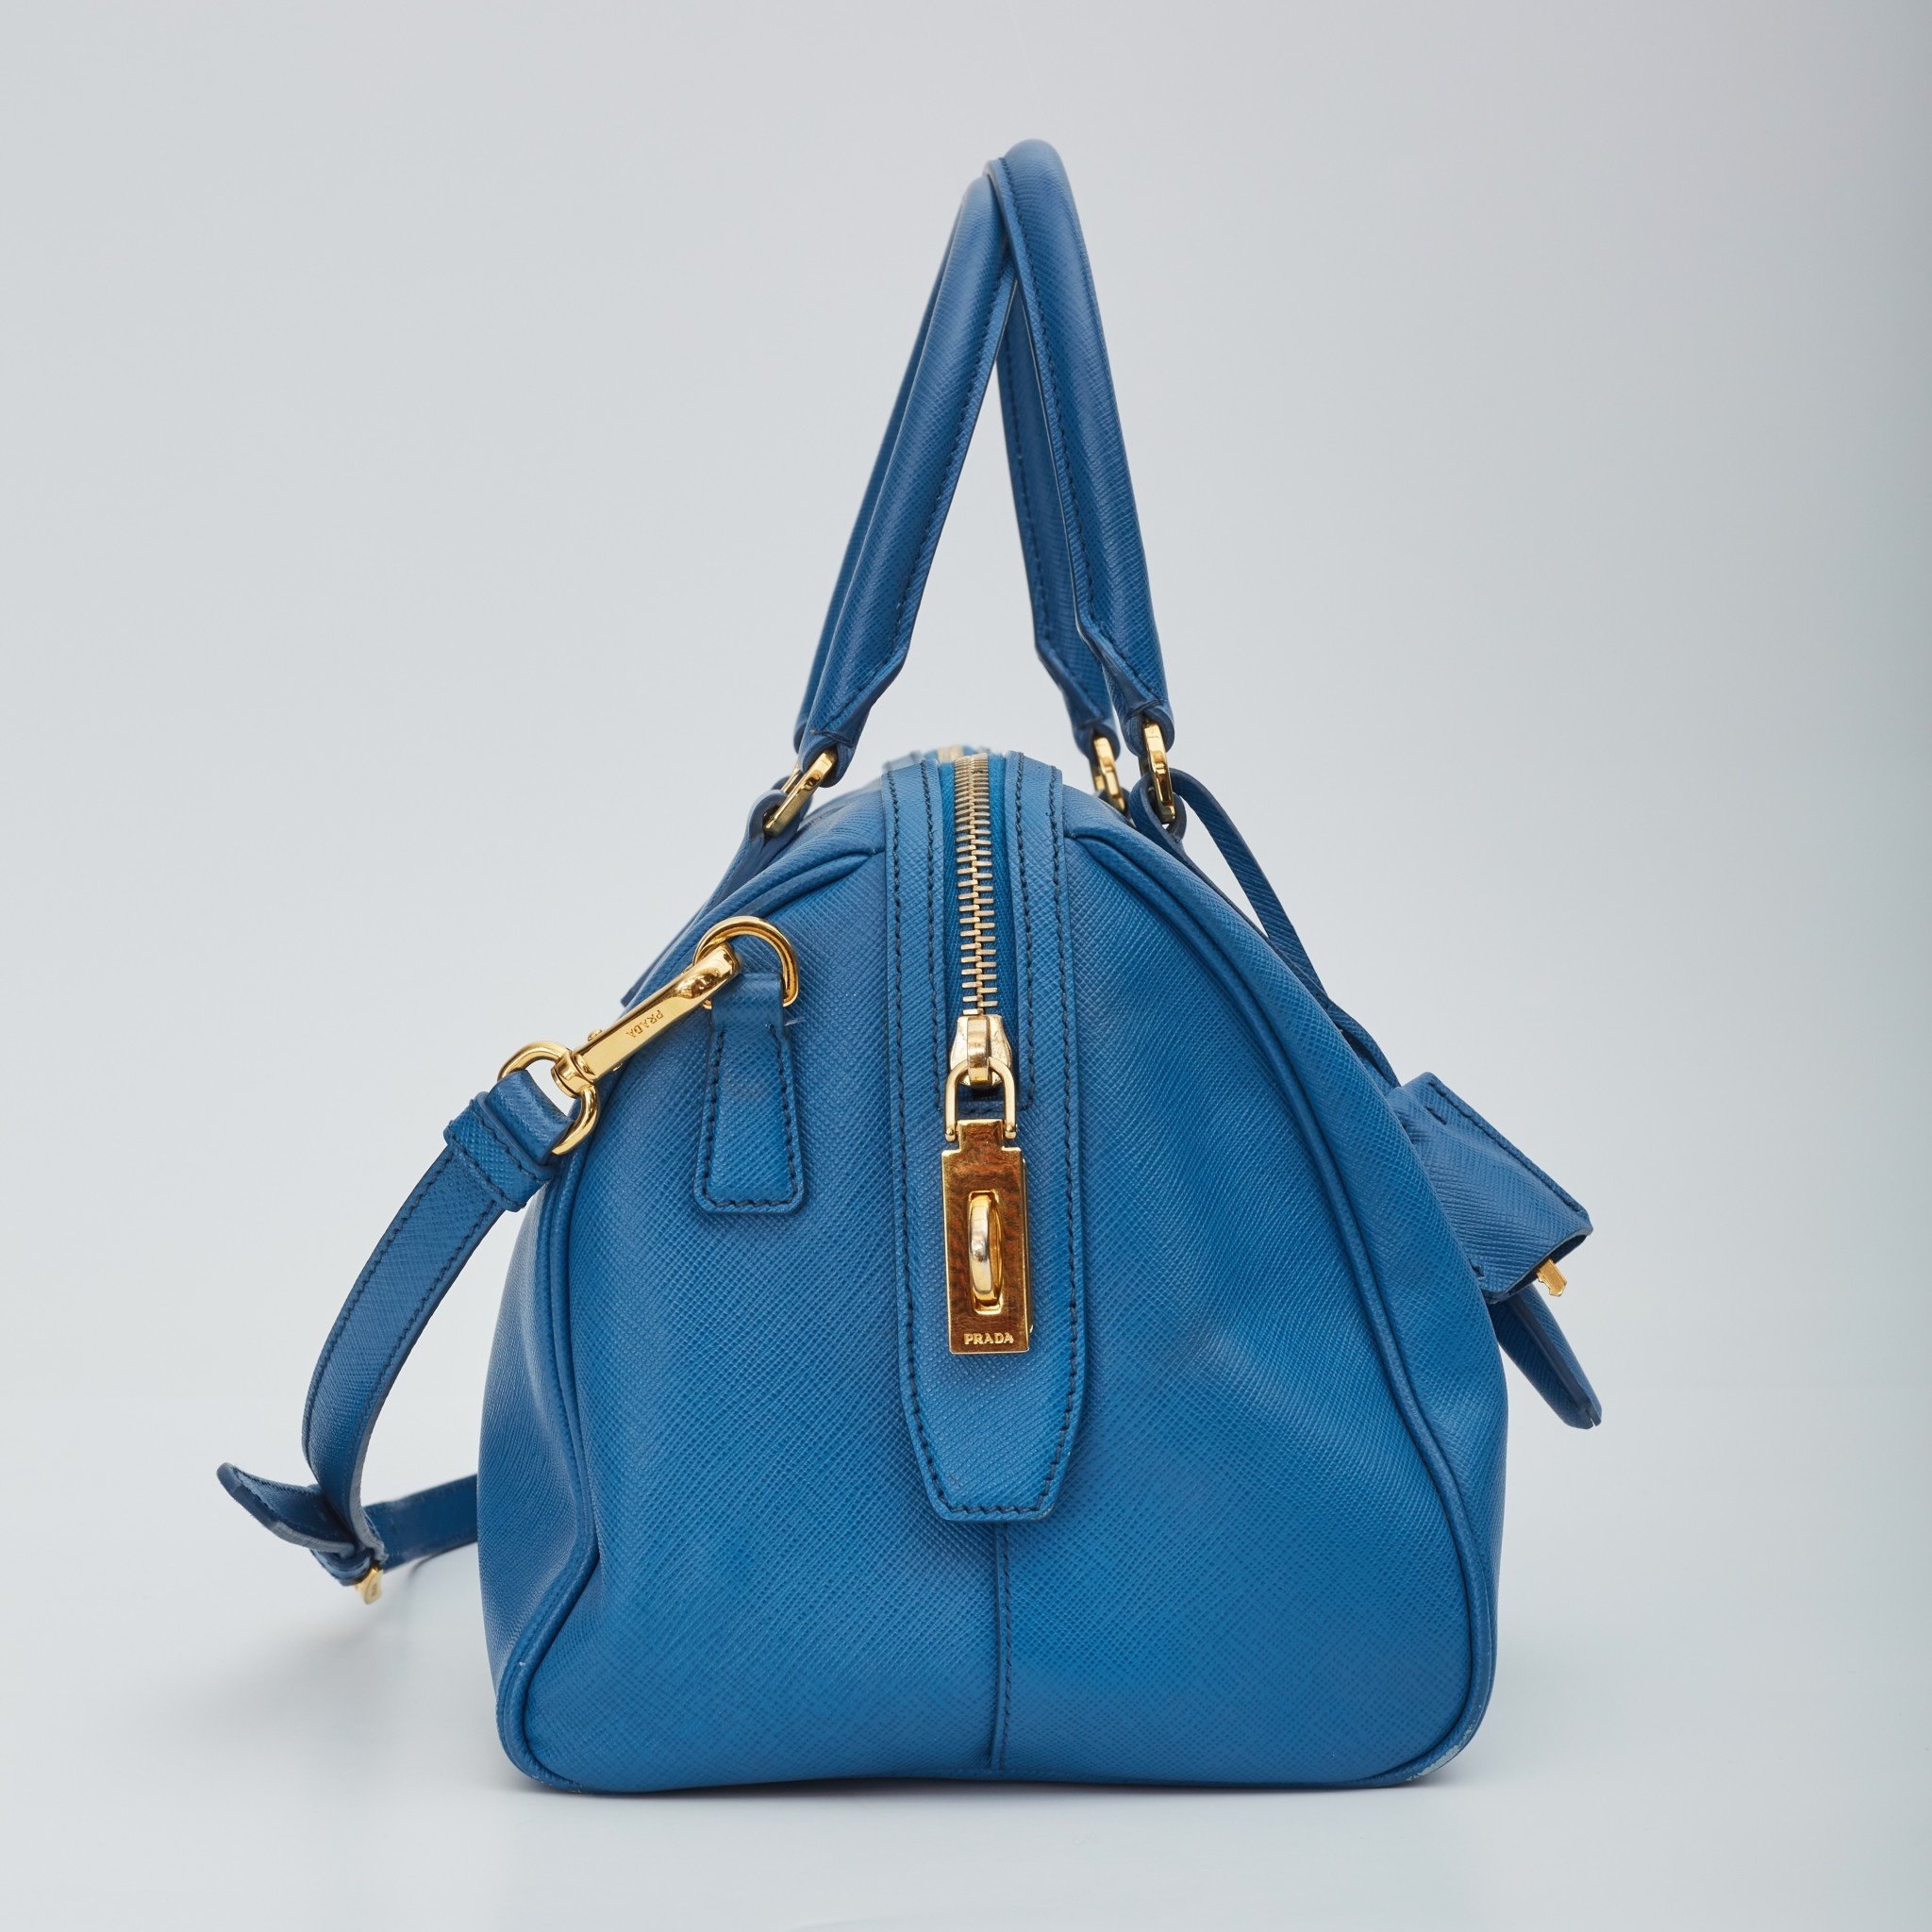 Prada Bauletto Saffiano Leather Handbag